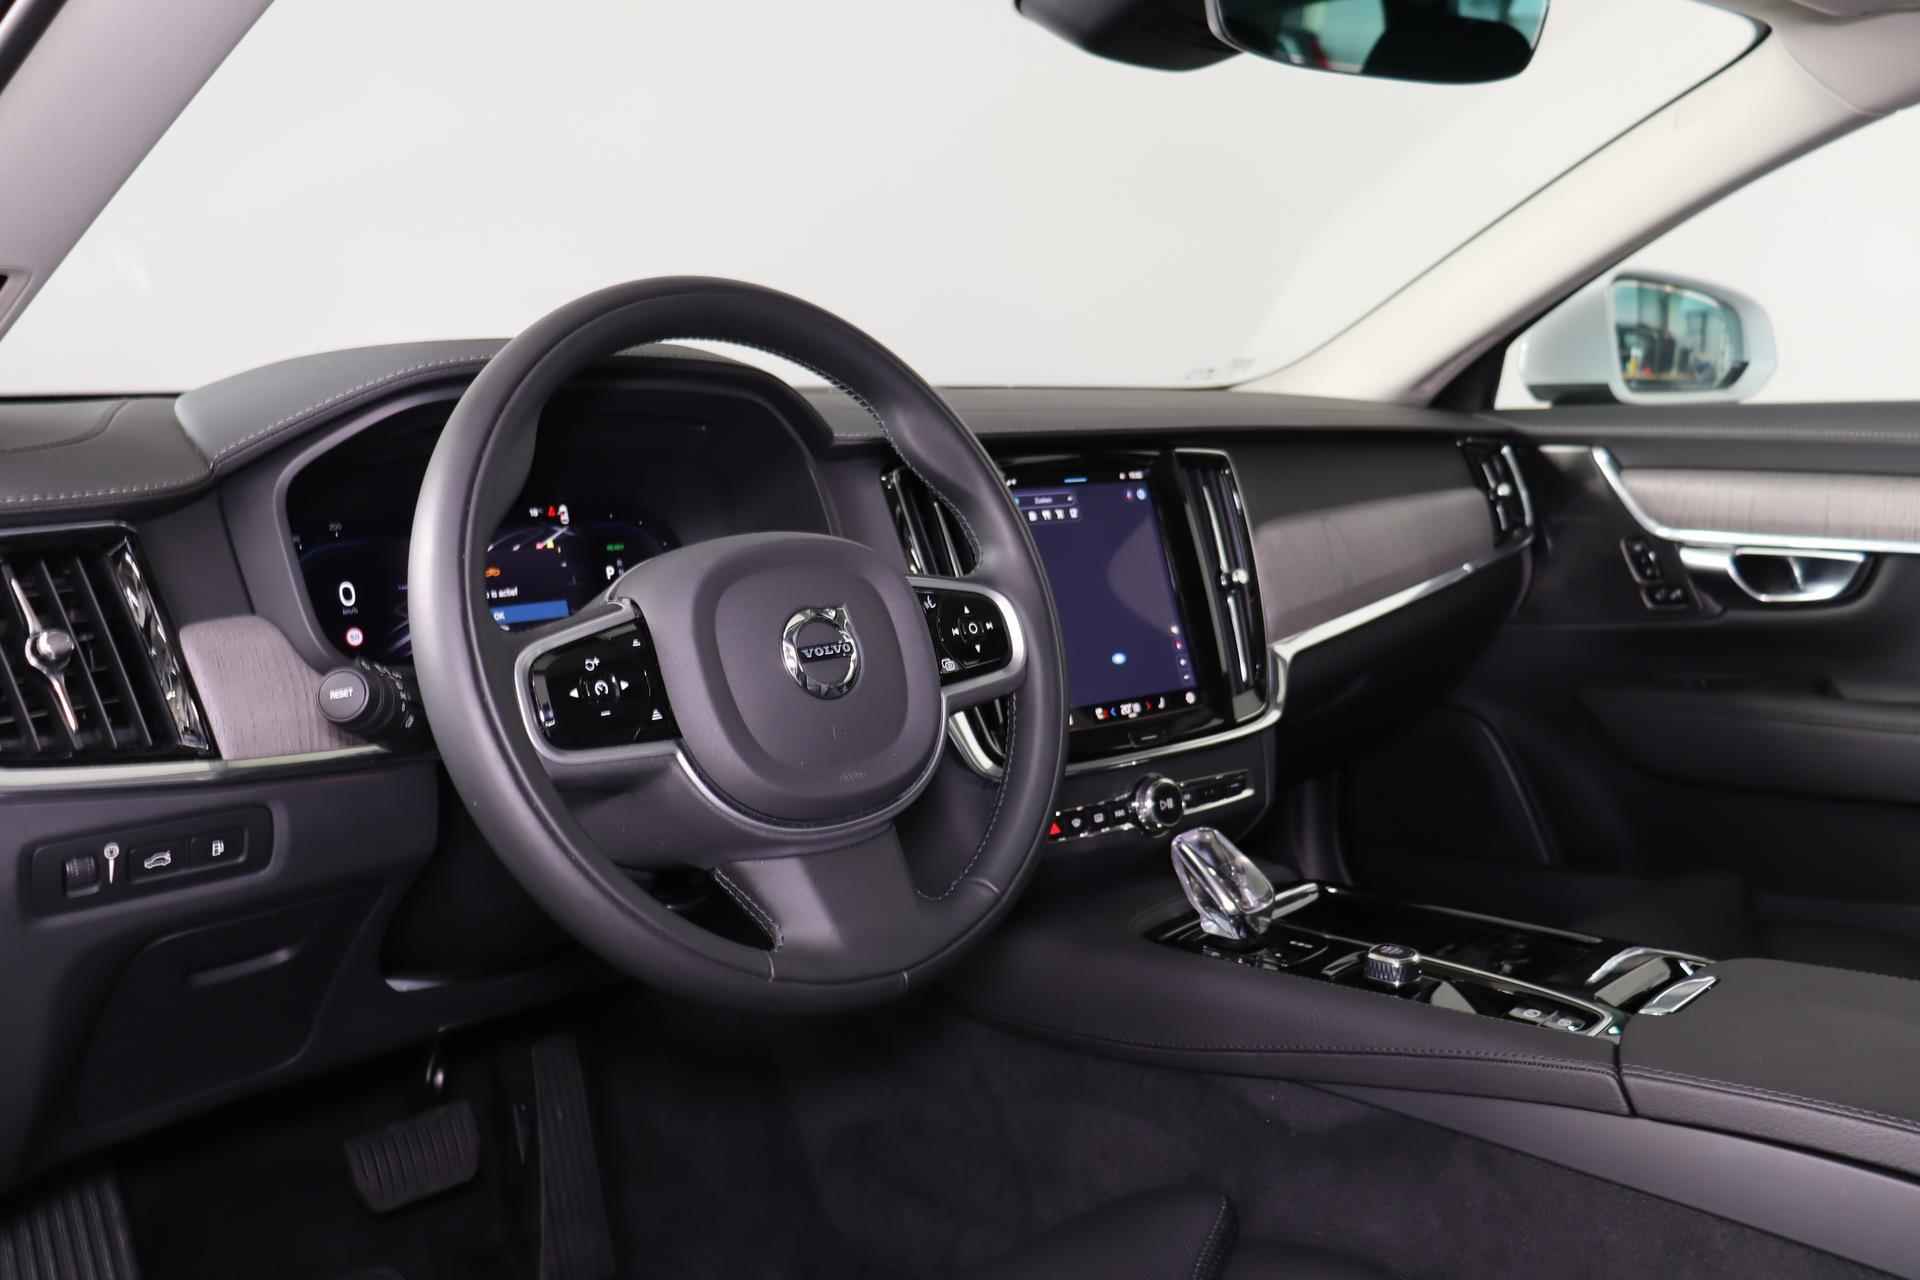 Volvo V90 T6 AWD Recharge Inscription - Panorama/schuifdak - IntelliSafe Assist & Surround - Harman/Kardon audio - Adaptieve LED koplampen - Parkeercamera achter - Verwarmde voorstoelen & stuur - Parkeersensoren voor & achter - Elektr. bedienb. voorstoelen met geheugen - Standkachel - 19' LMV - 26/33